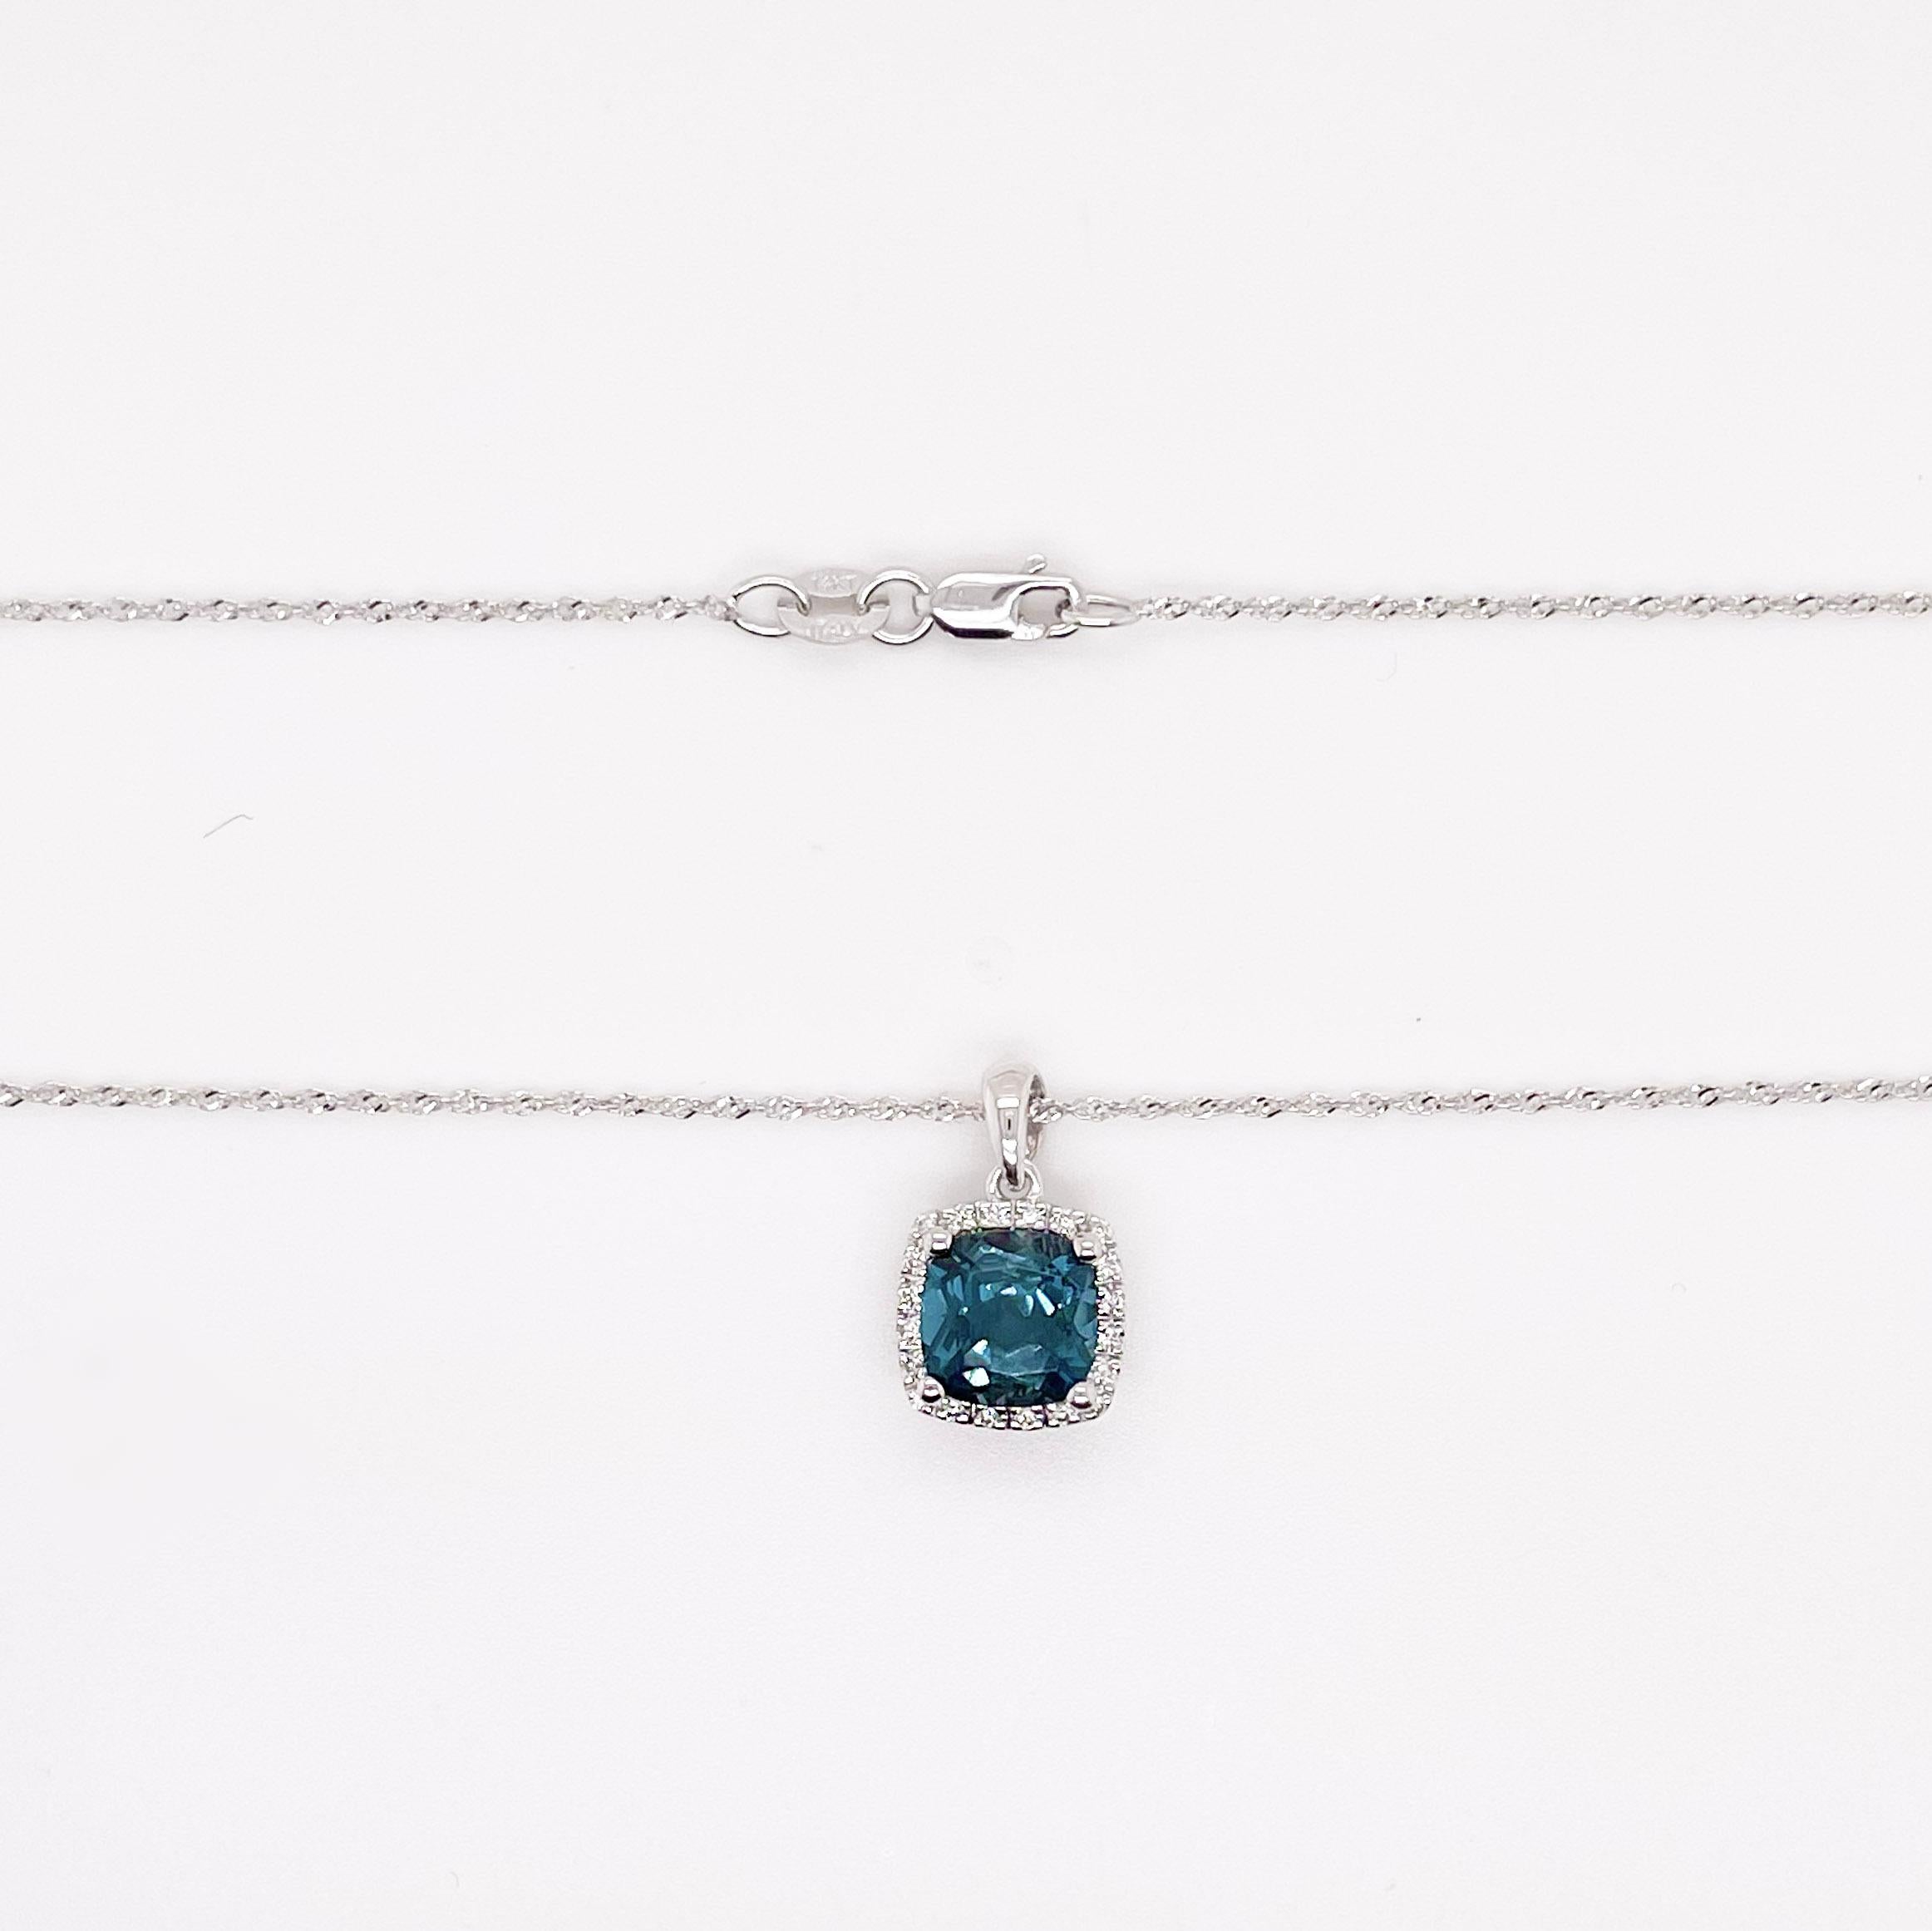 Cette topaze bleue de minuit en forme de coussin a une couleur incroyablement vibrante qui est rendue encore plus belle par le halo de diamants. Le pendentif se marie parfaitement avec la délicate chaîne en corde de bébé à laquelle il est suspendu.